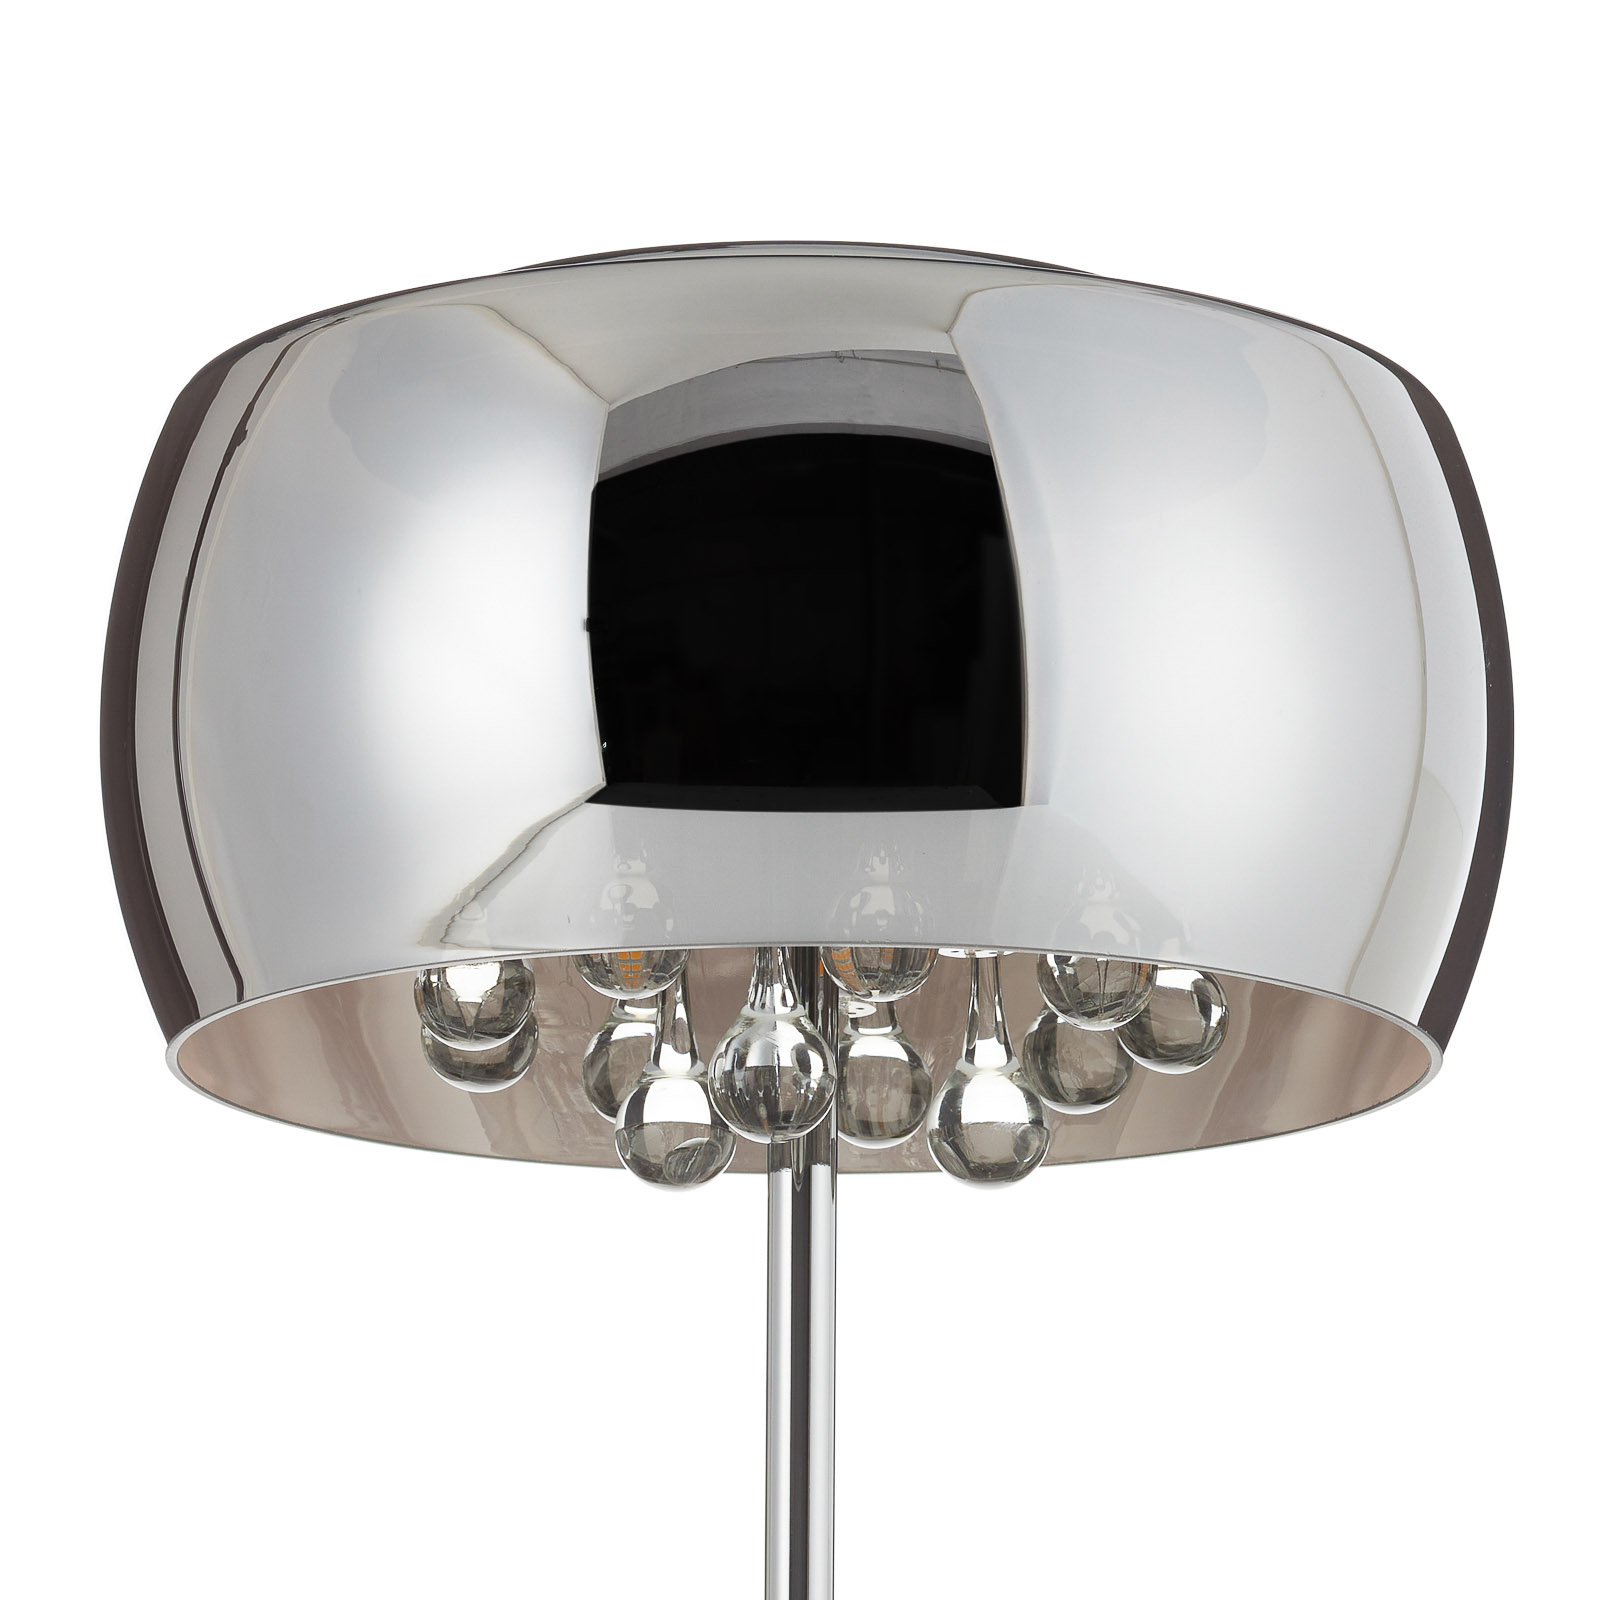 Lampa stołowa LED Argos